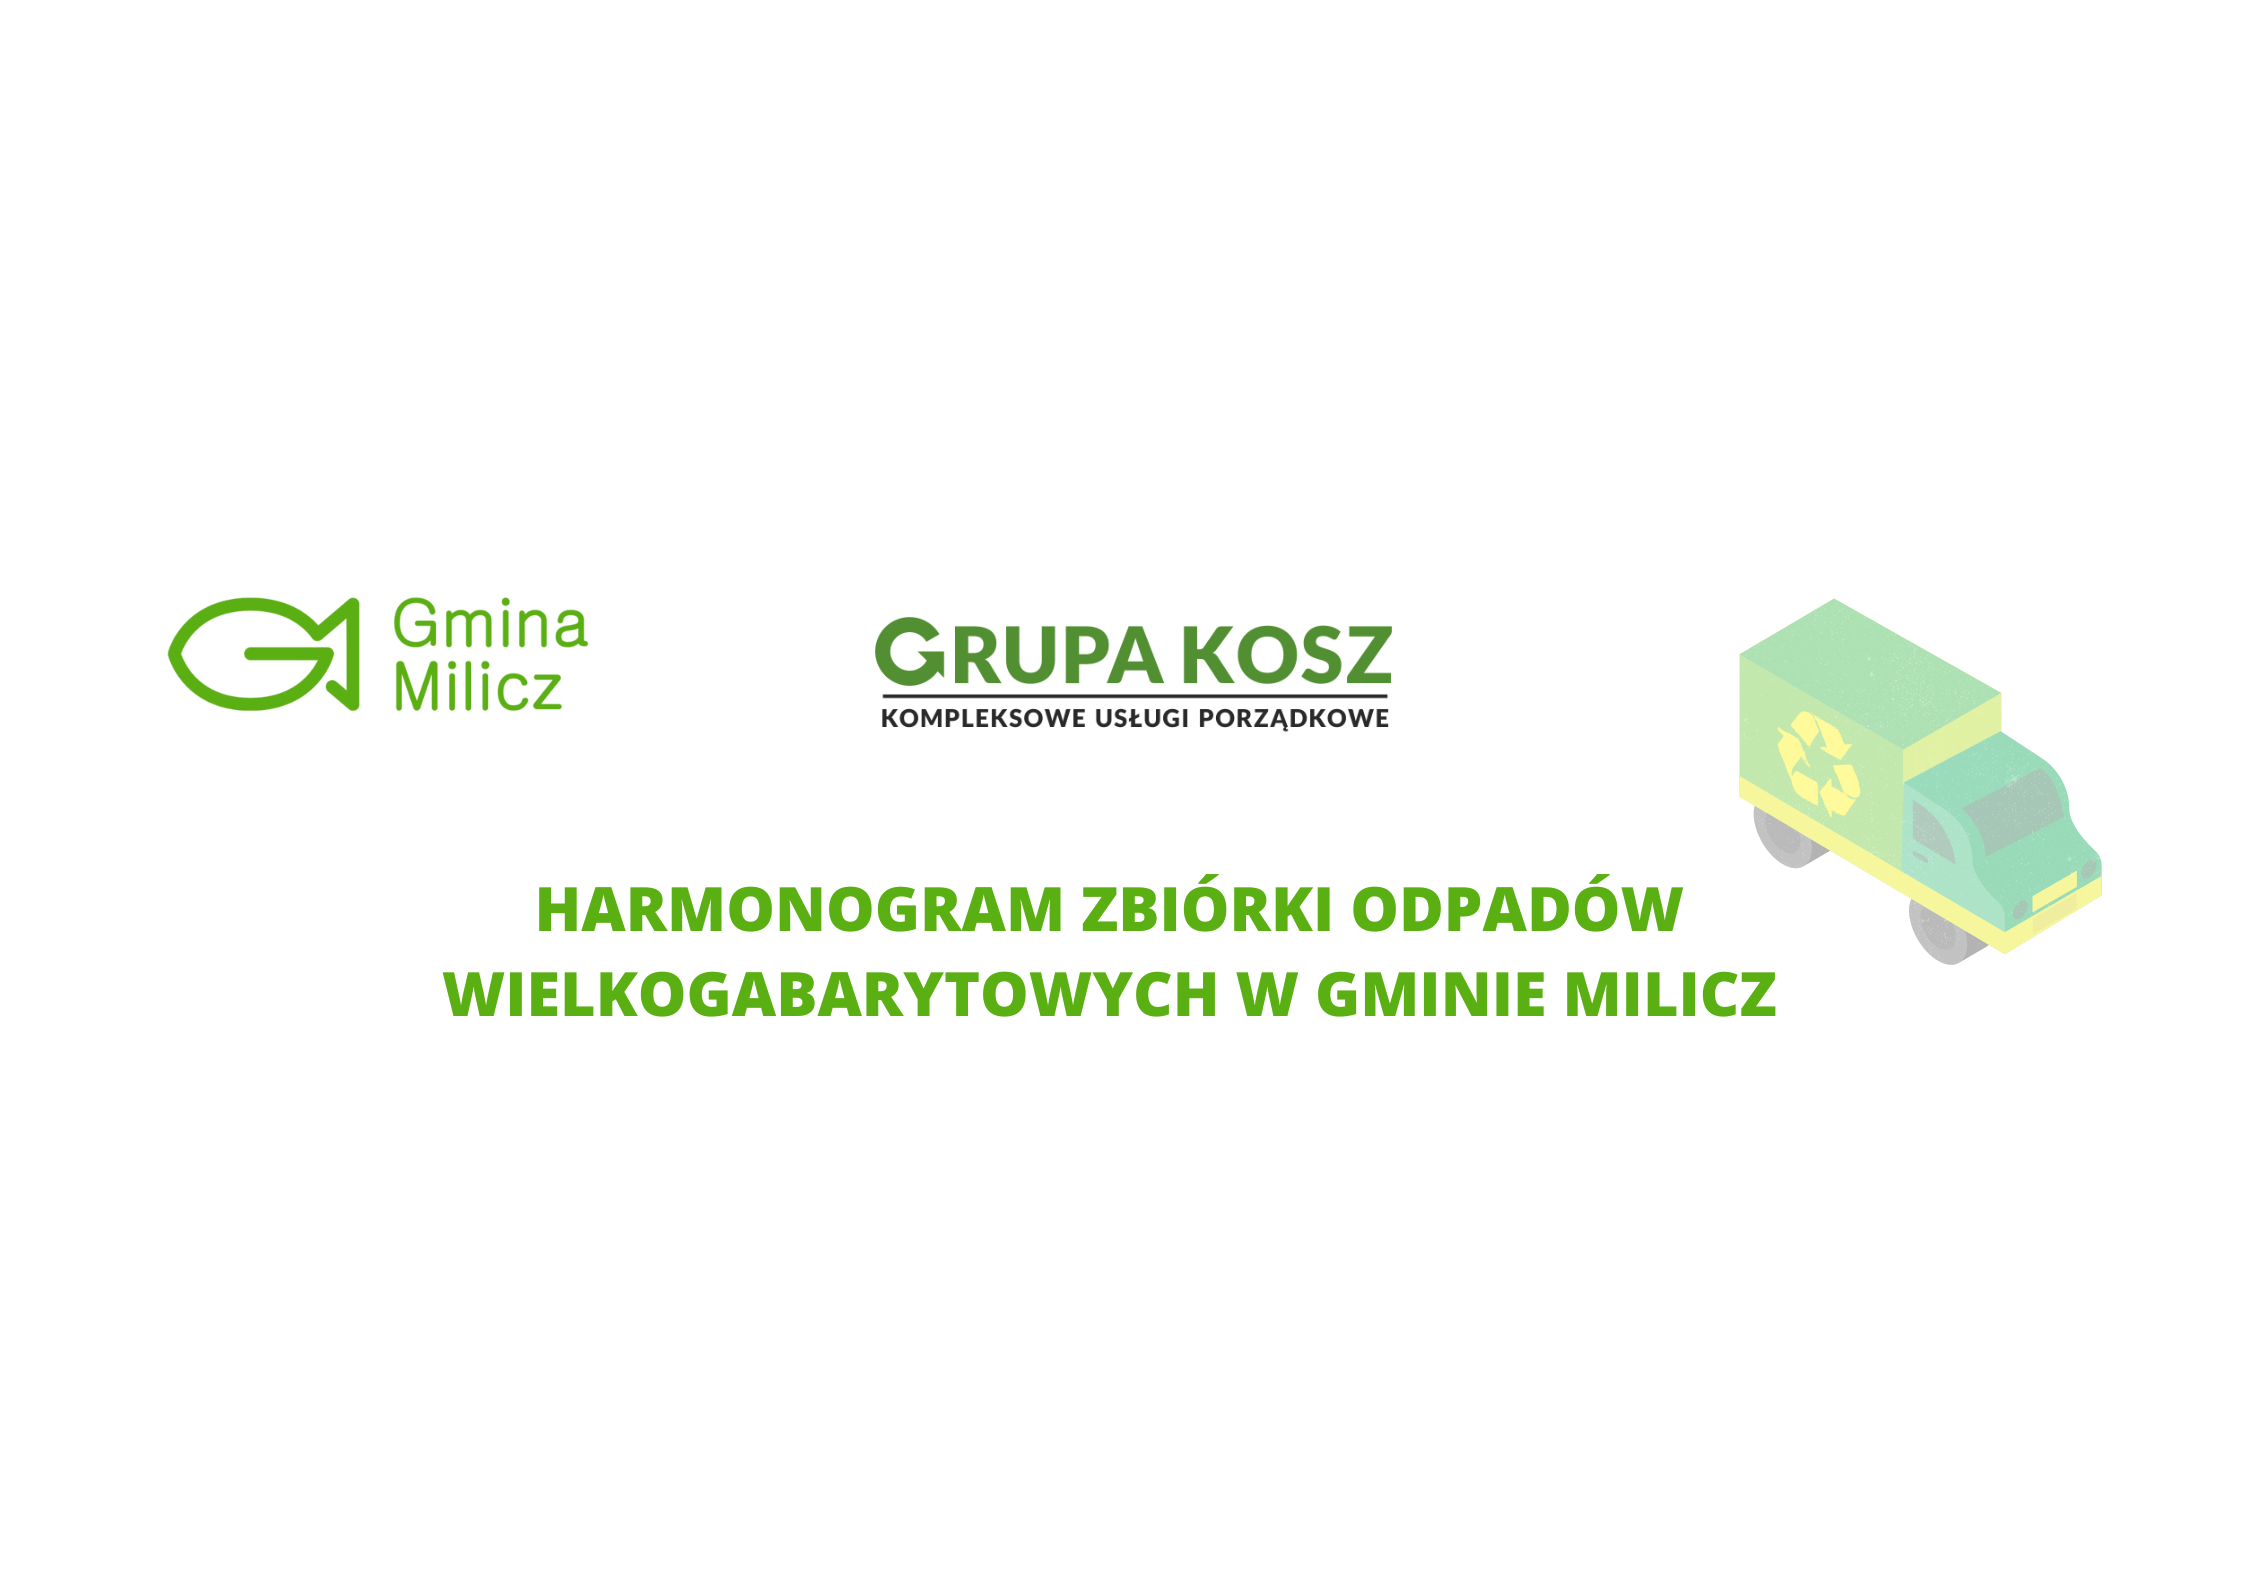 Zbiórka odpadów wielkogabarytowych w gminie Milicz